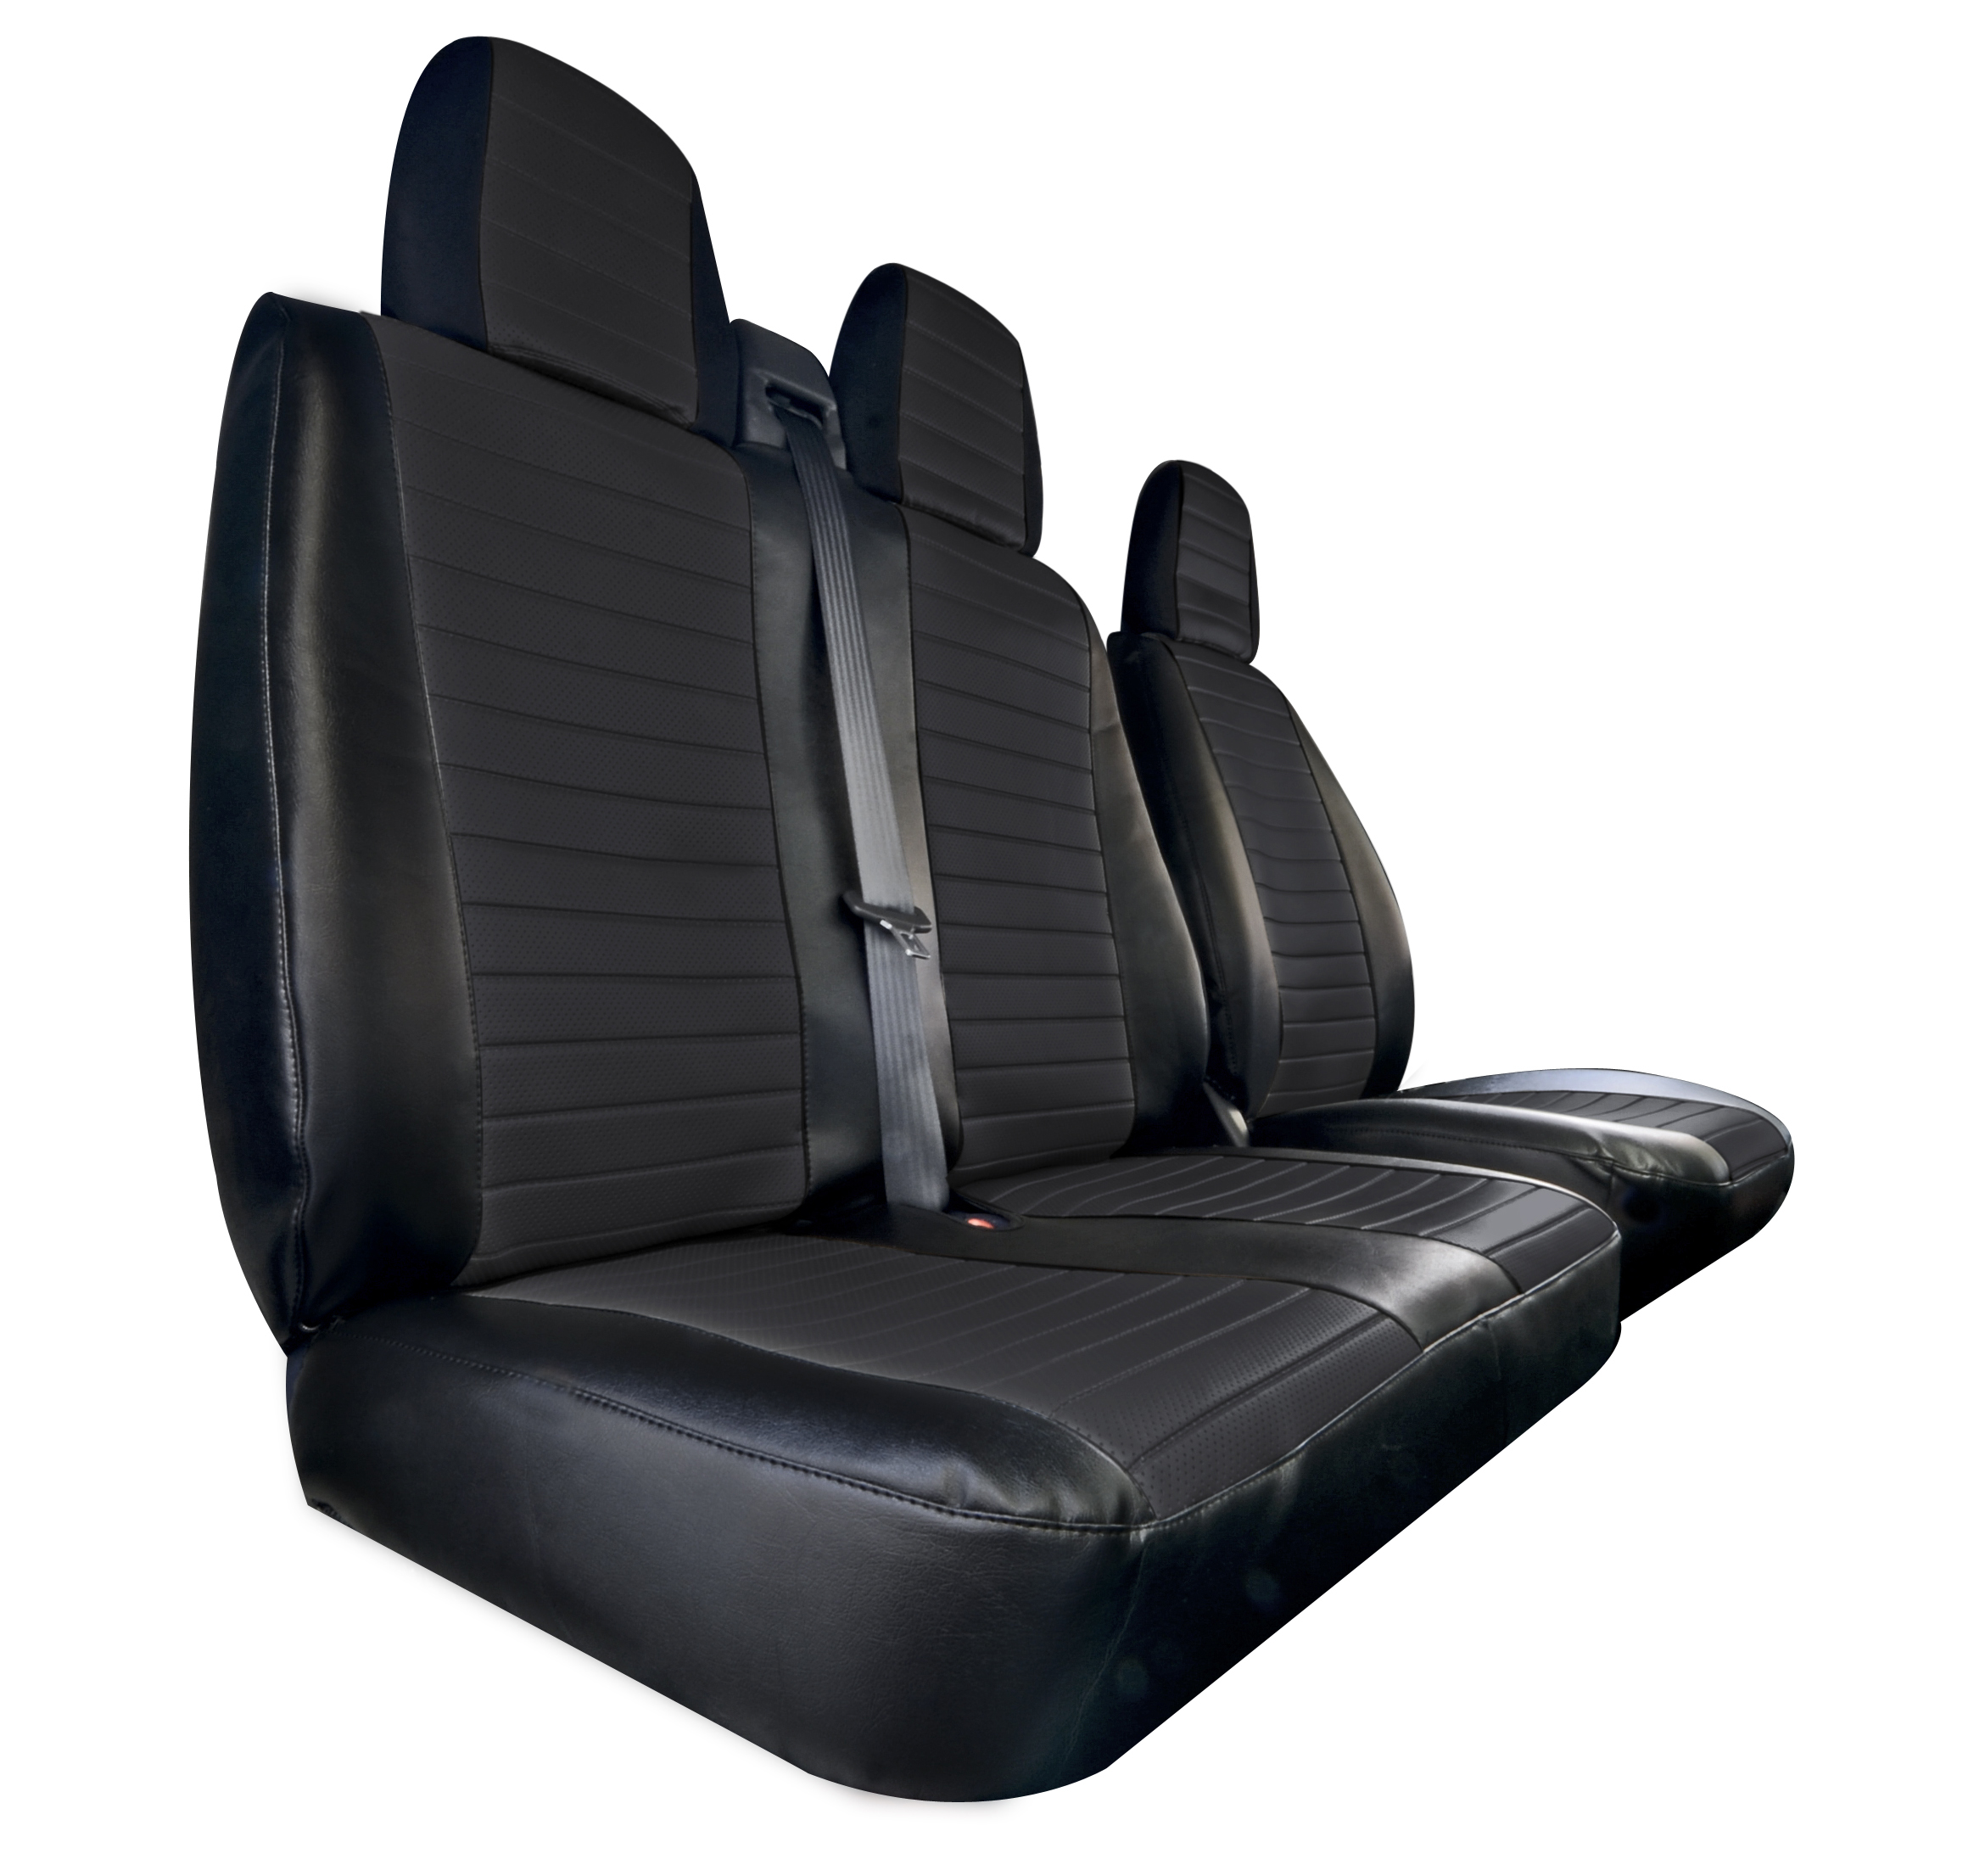 Housses sièges similicuir Peugeot Partner 3 places. modèles 2023